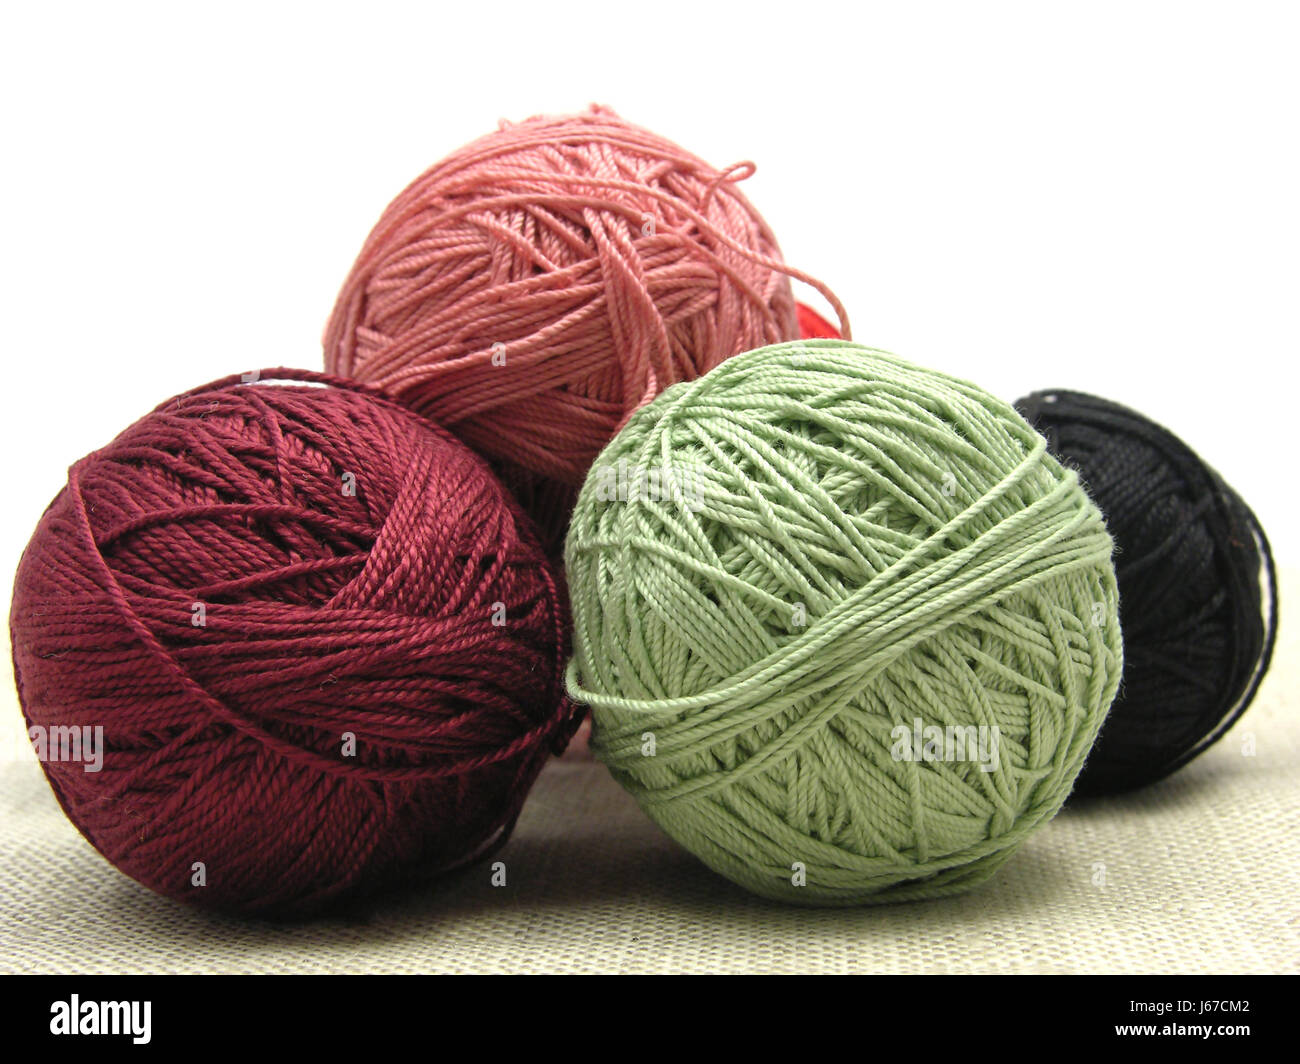 Artesanías tejido de lana hilados de lana bolas crochet Negro color azul swarthy Foto de stock